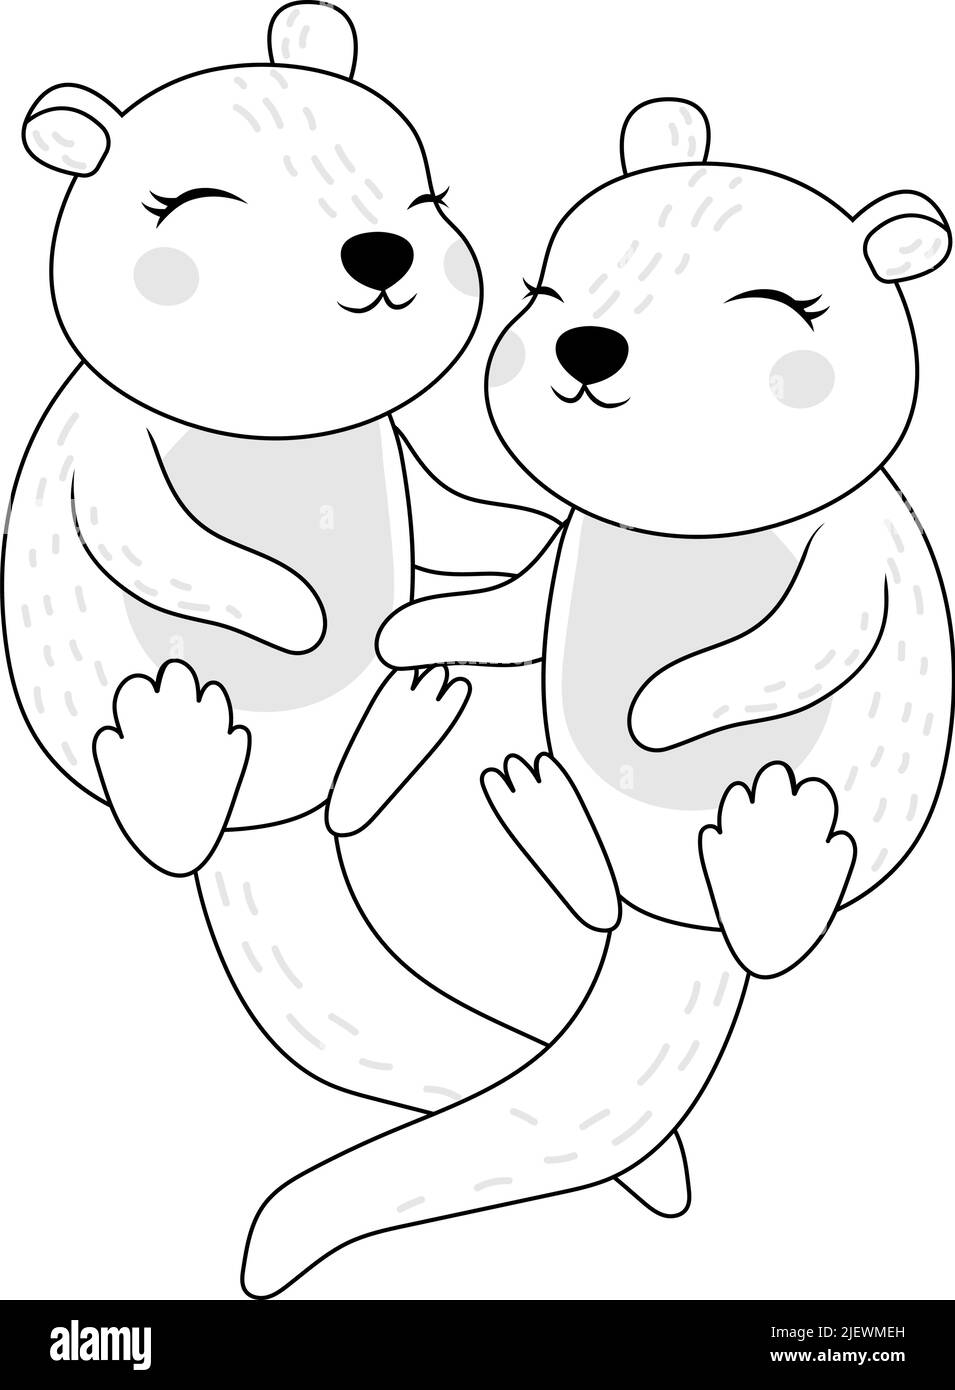 Clipart Otters Malseite im Cartoon-Stil. Niedliche Clip Art zwei Otter Schwarz und Weiß. Vektor-Illustration eines Tieres für Aufkleber, Babydusche Stock Vektor